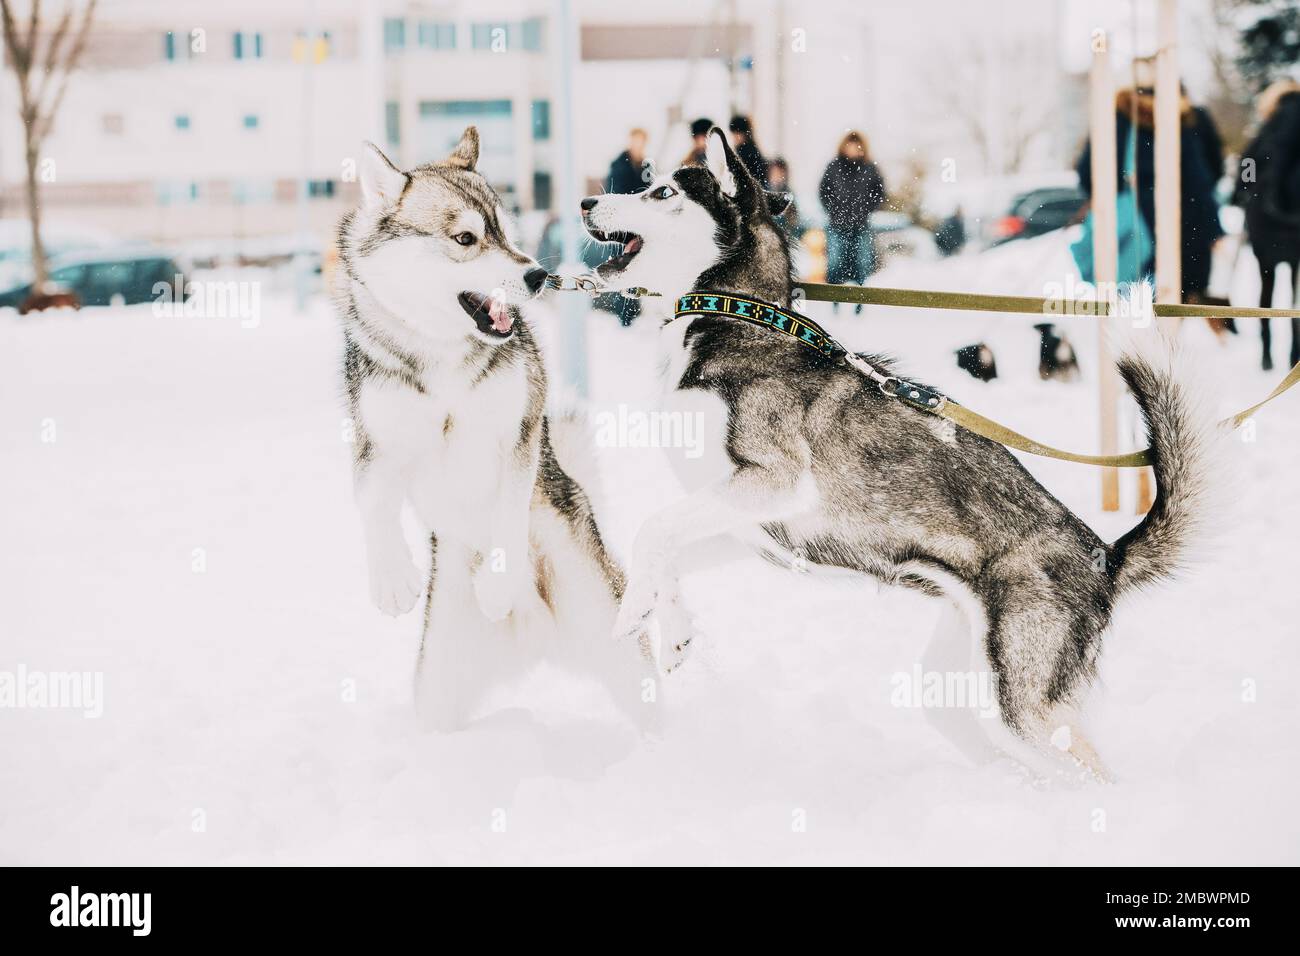 Konzept Der Rivalität Hund. Zwei Junge Lustige Husky-Hunde Auf Dem Winterspaziergang. Wettbewerb Der Hunde. Pets Play, Jumping Und Fast Running Stockfoto